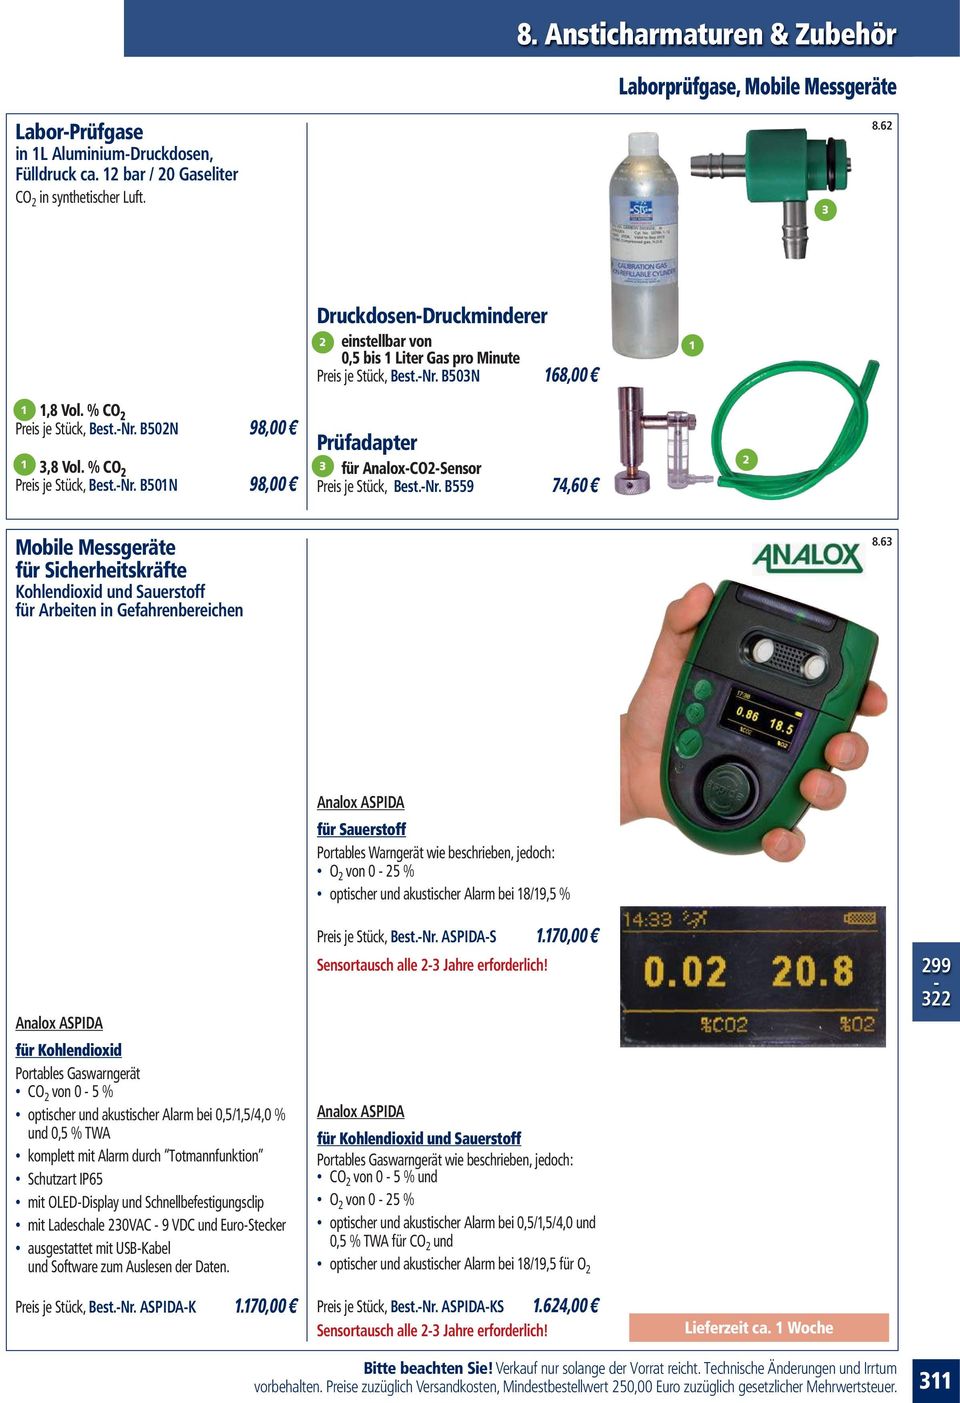 6 Analox ASPIDA für Kohlendioxid Portables Gaswarngerät CO von 0 5 % optischer und akustischer Alarm bei 0,5/,5/4,0 % und 0,5 % TWA komplett mit Alarm durch Totmannfunktion Schutzart IP65 mit